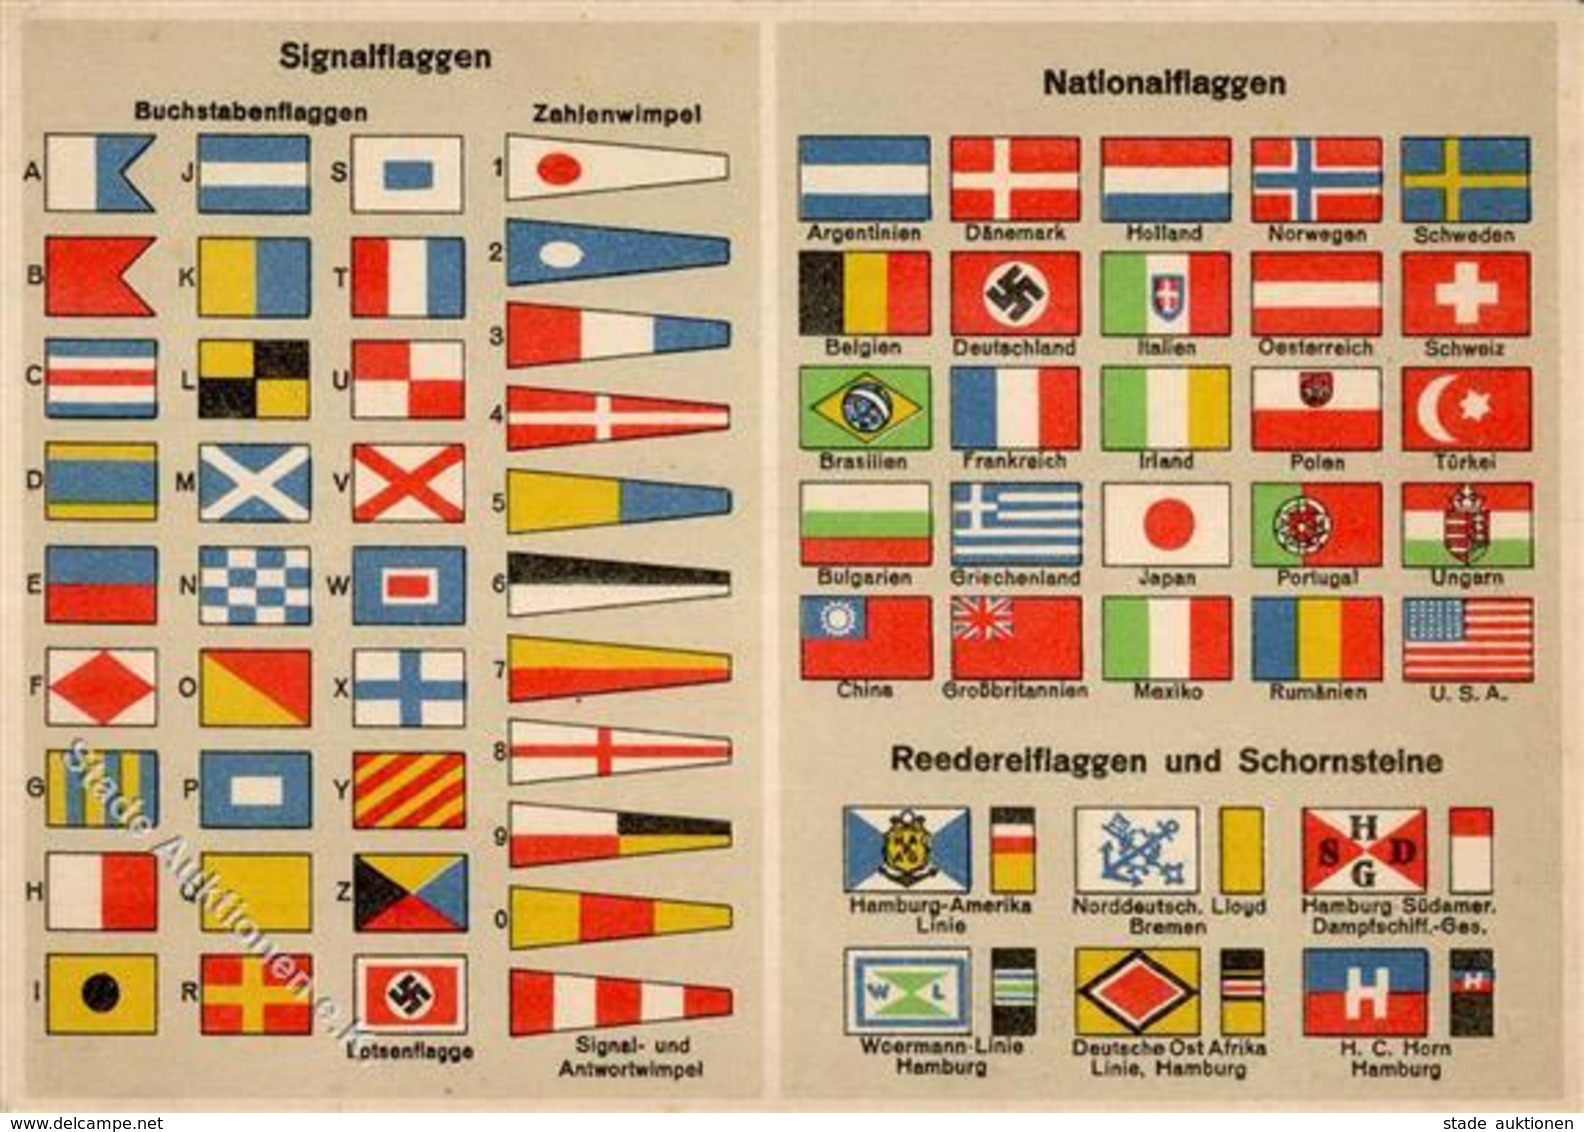 FAHNE/STANDARTE WK II - SIGNALFLAGGEN - NATIONALFLAGGEN I-II - Weltkrieg 1939-45